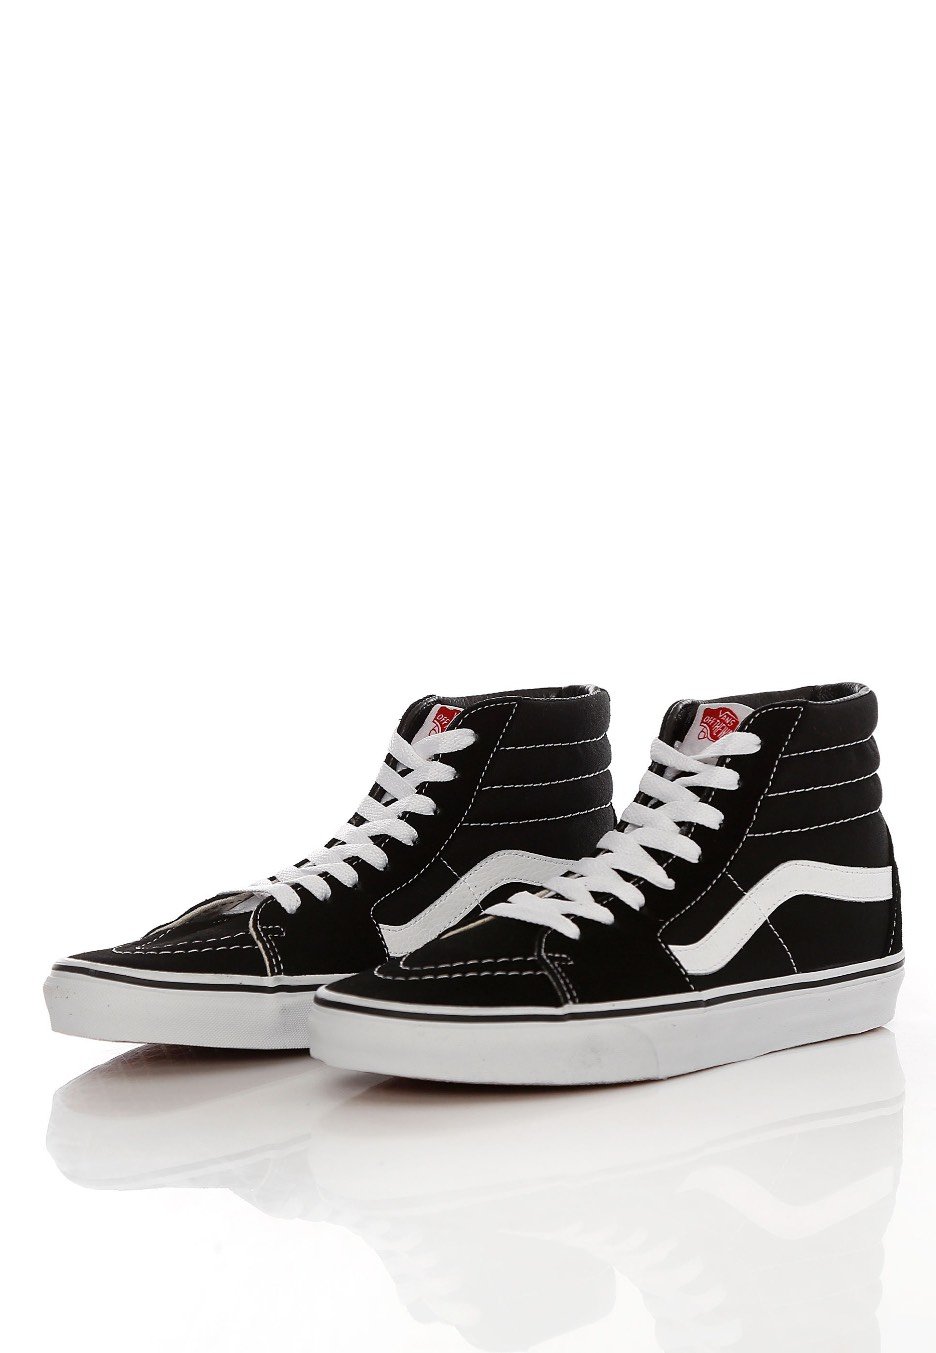 Vans - Sk8-Hi Black/Black/White - Shoes